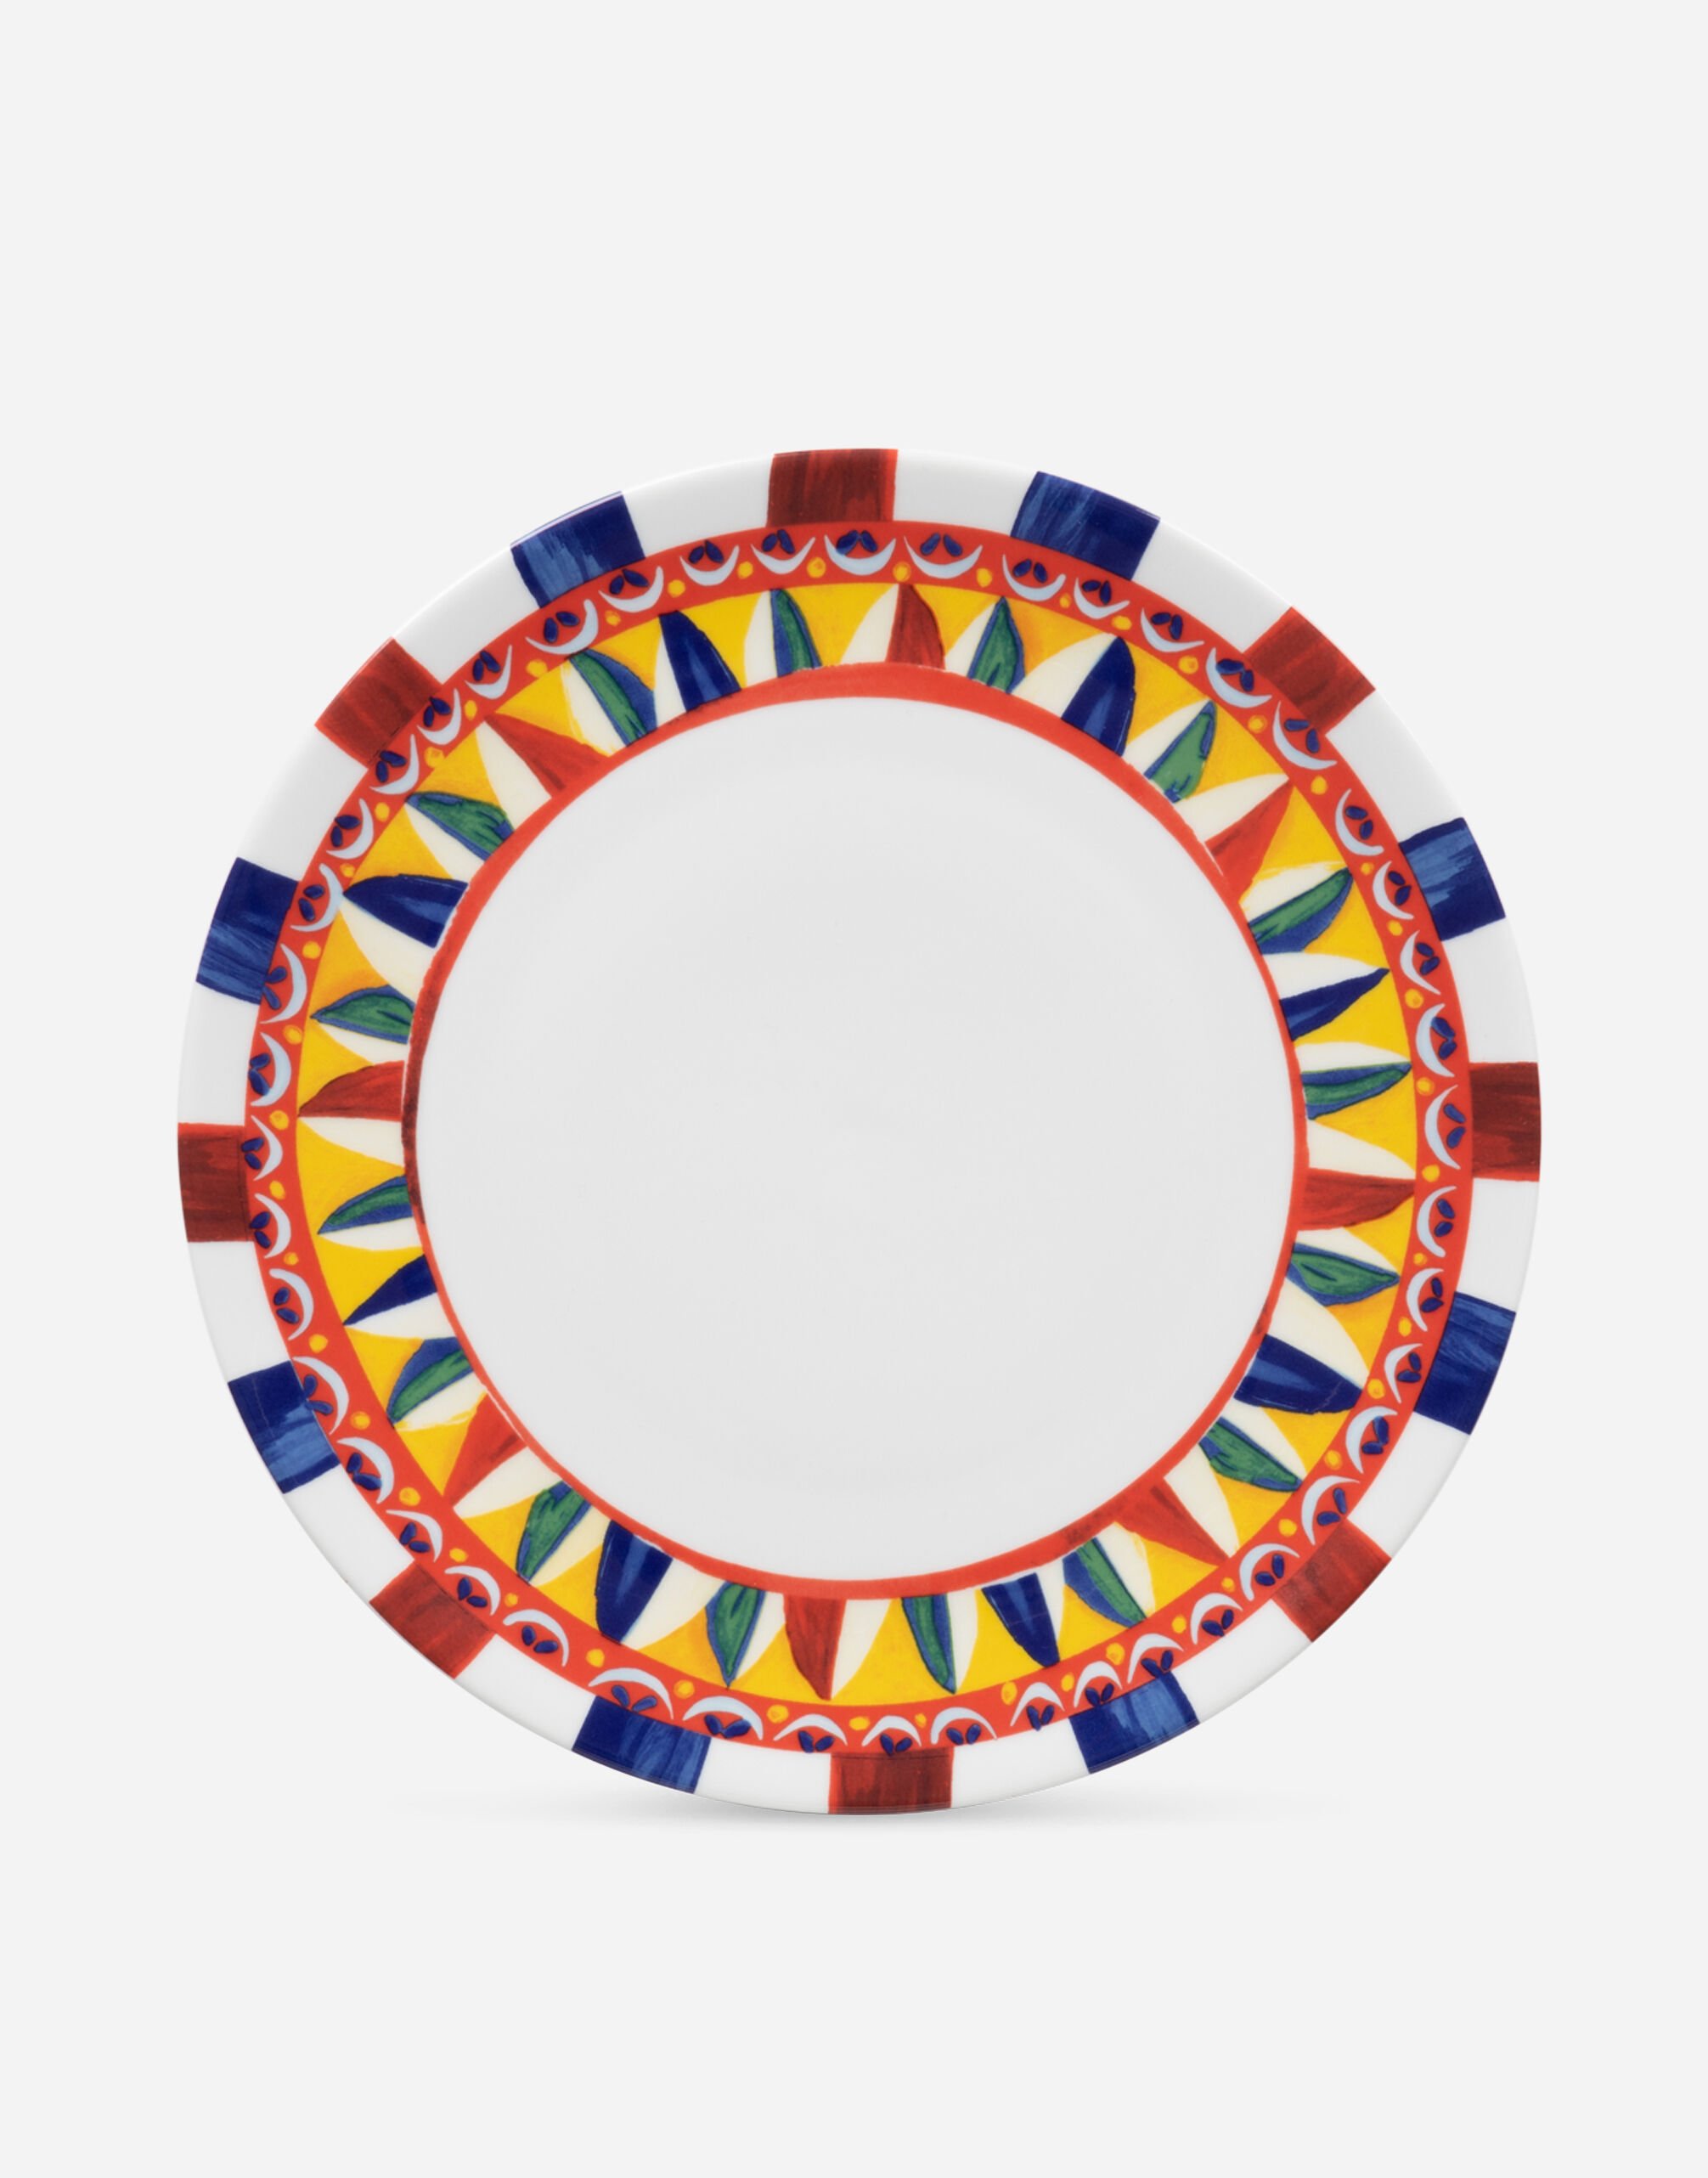 Dolce & Gabbana Bajoplato de porcelana Multicolore TC0005TCA48